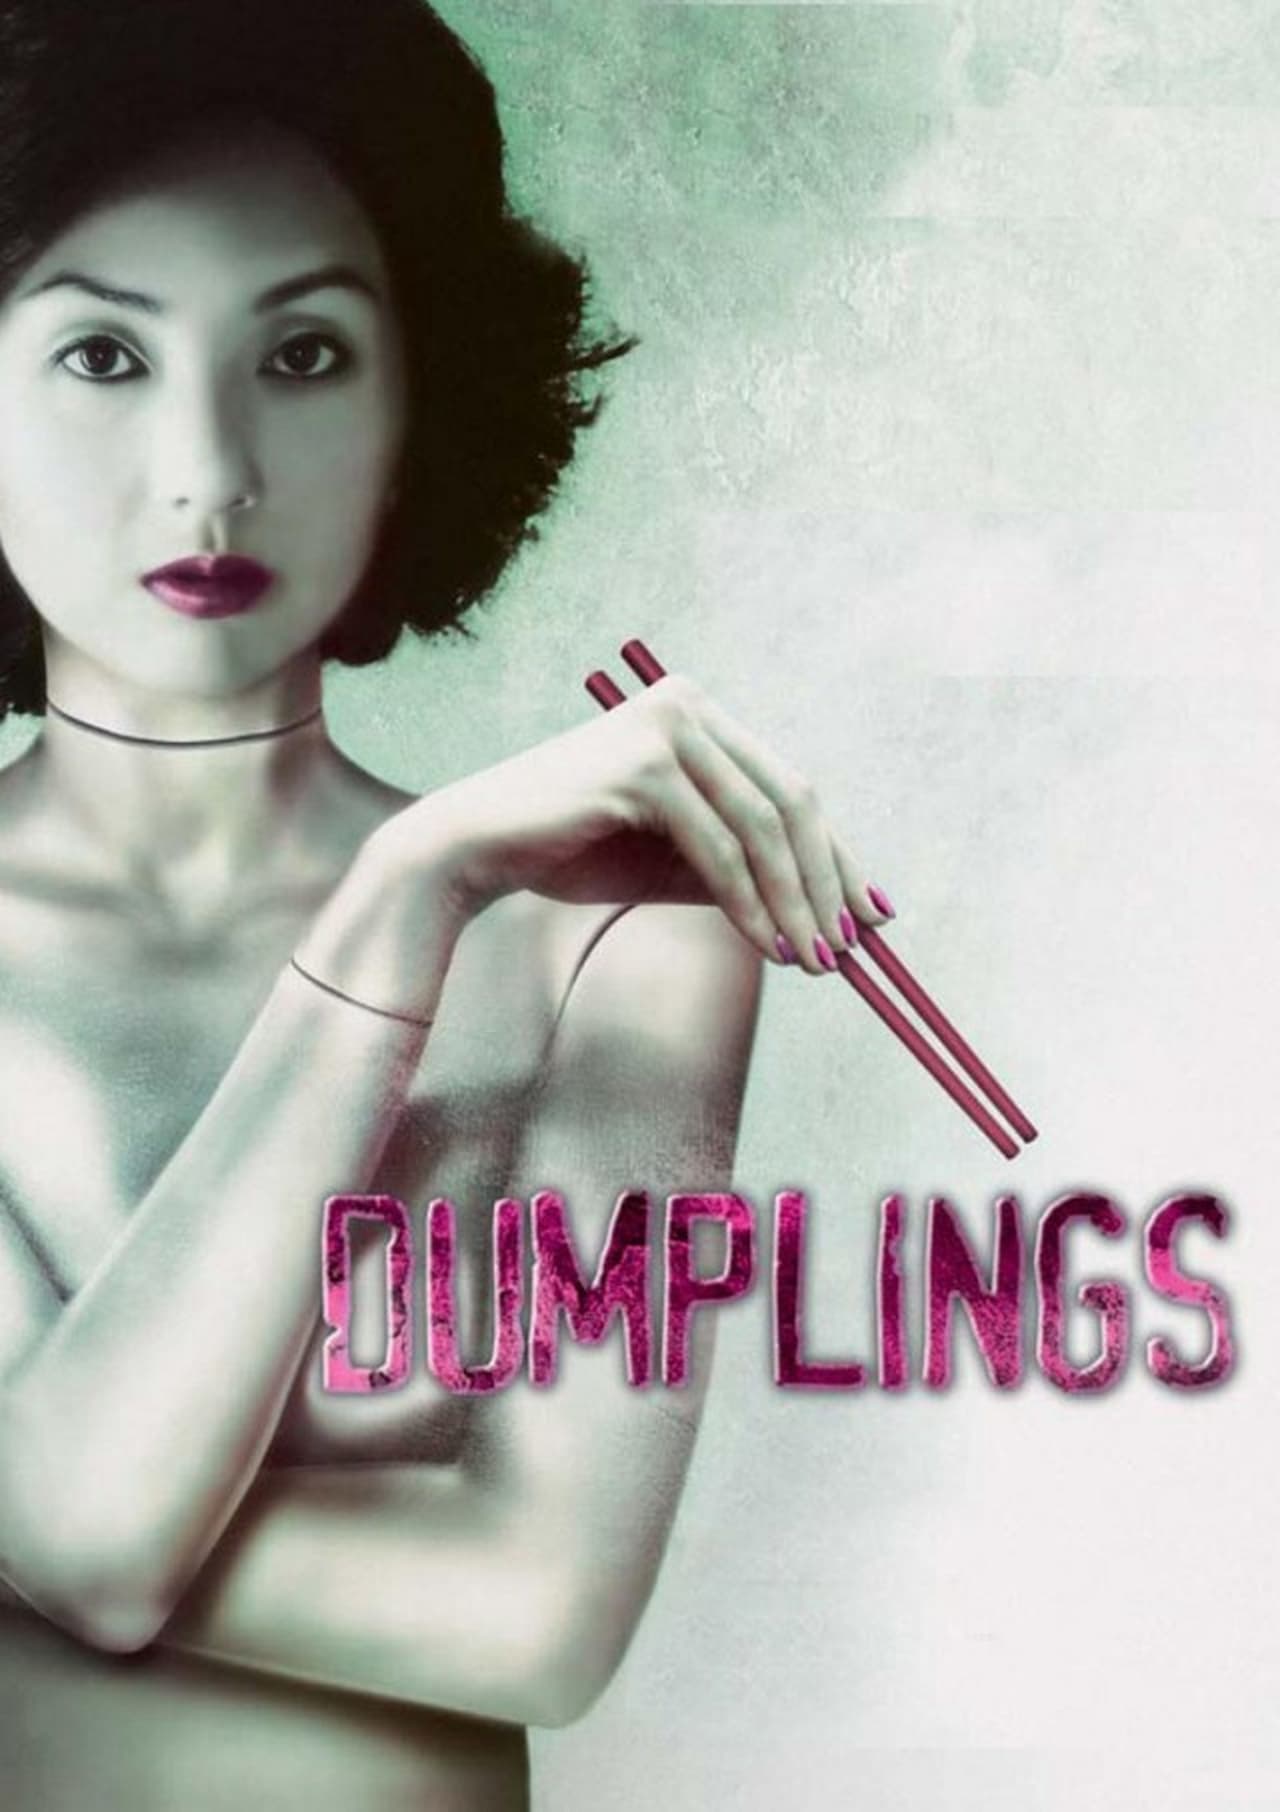 Dumplings poster